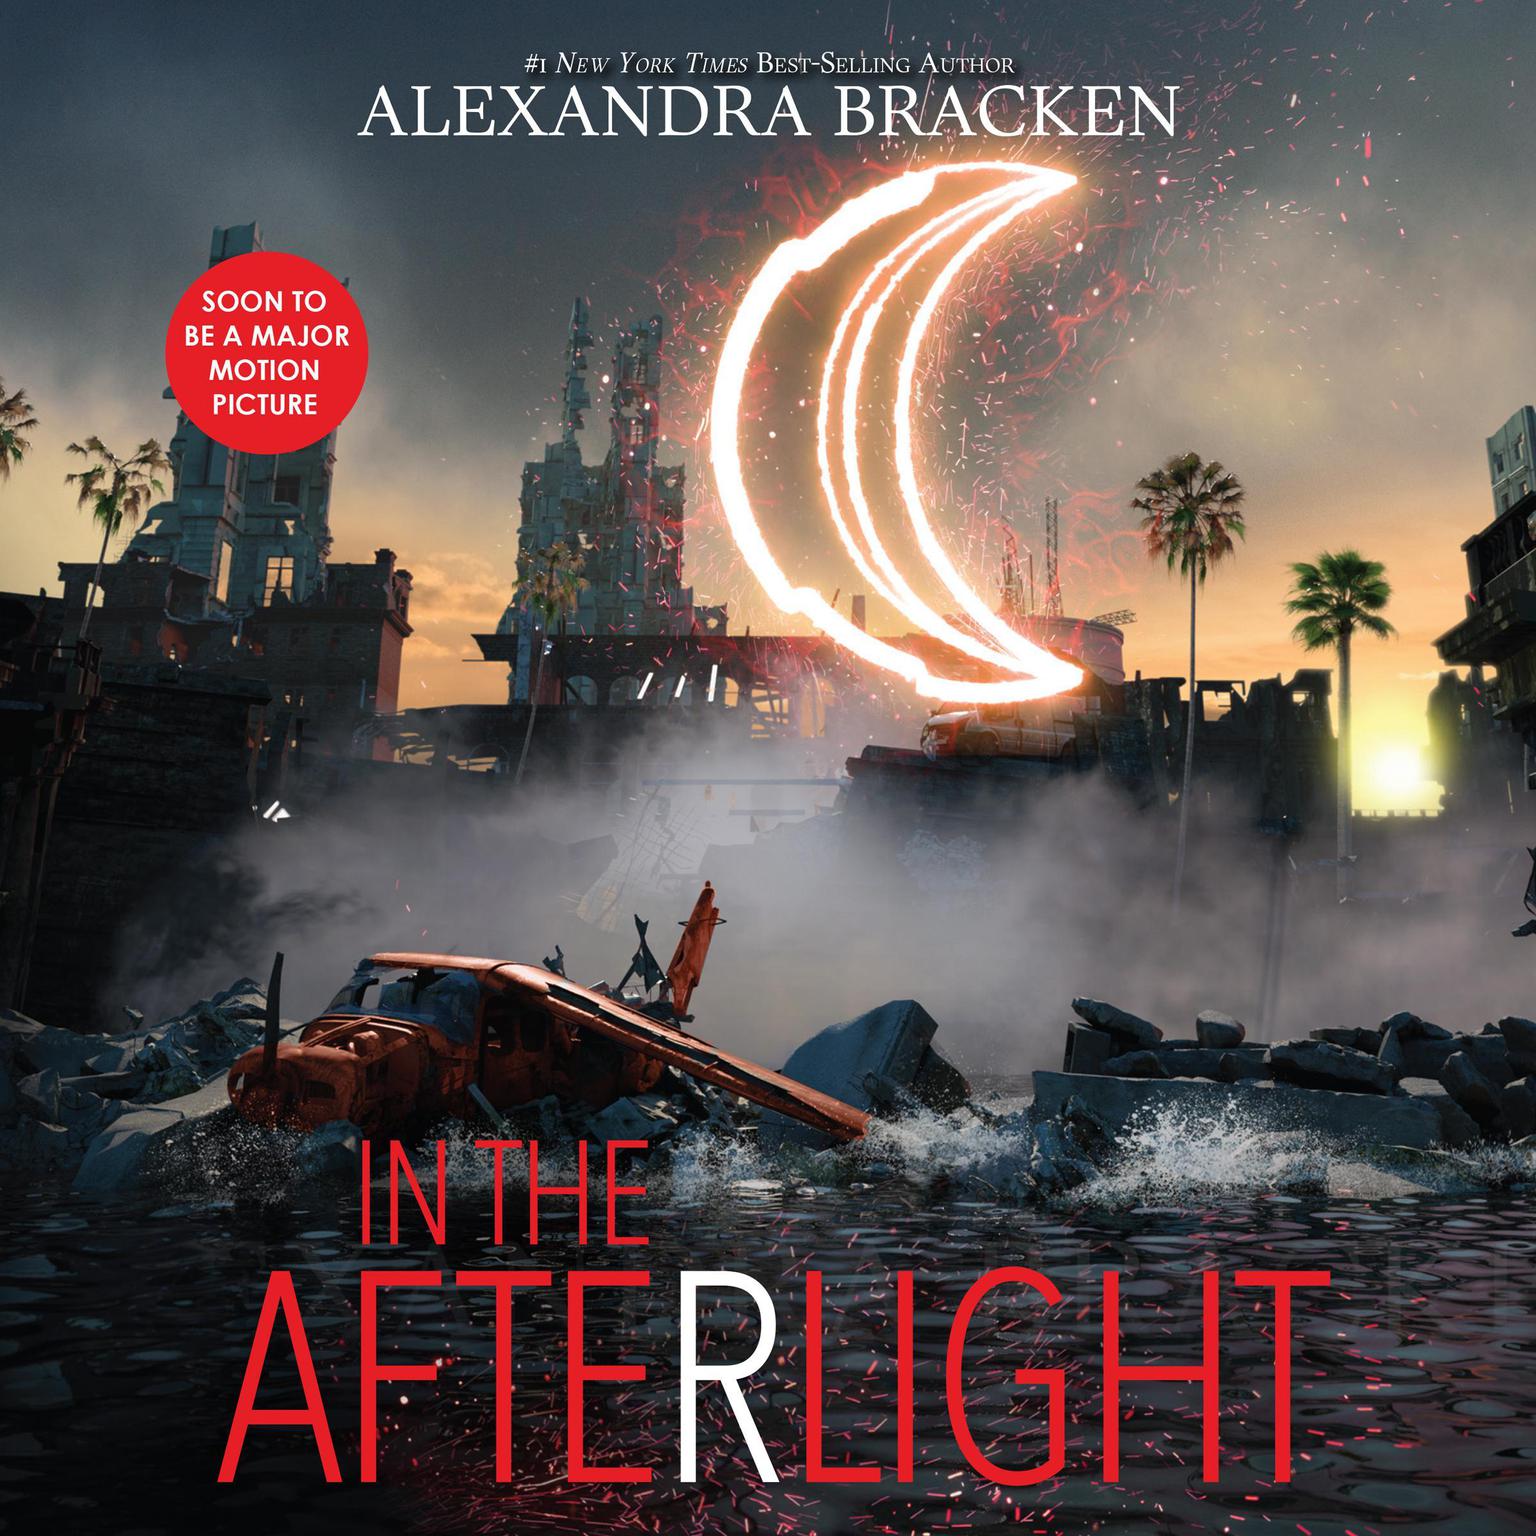 Download Torrent Alexandra Bracken In The Afterlight